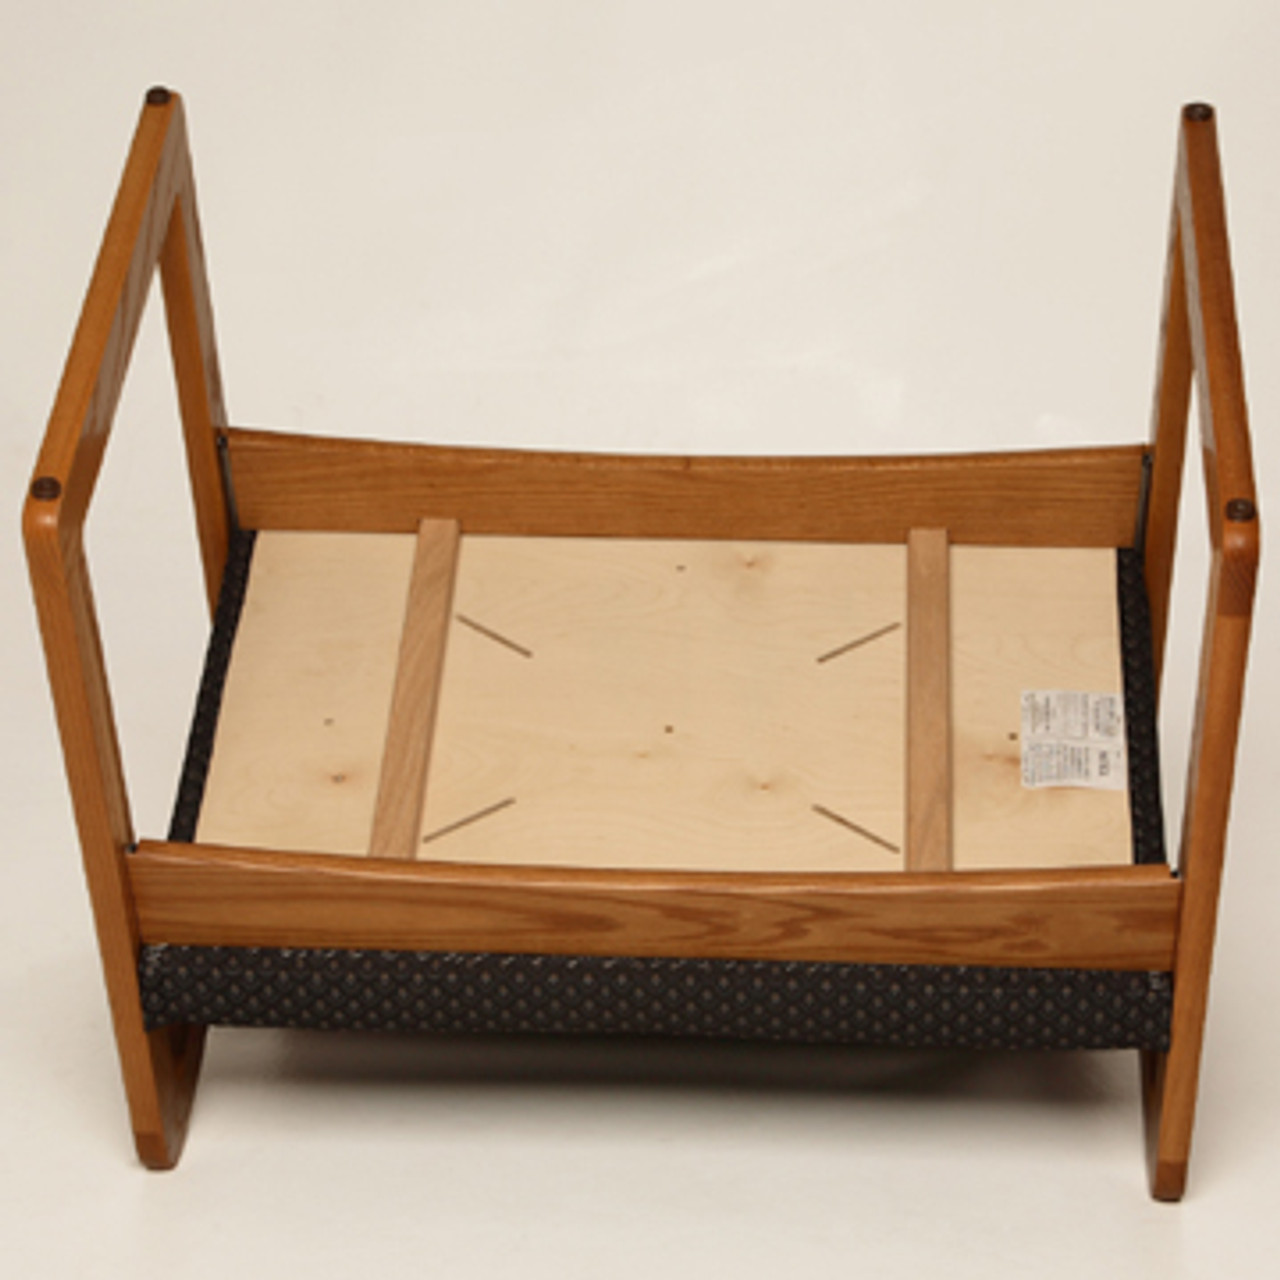 Wooden Mallet Prairie Collection Guest Chair, Standard Leg, Watercolor Earth, Medium Oak